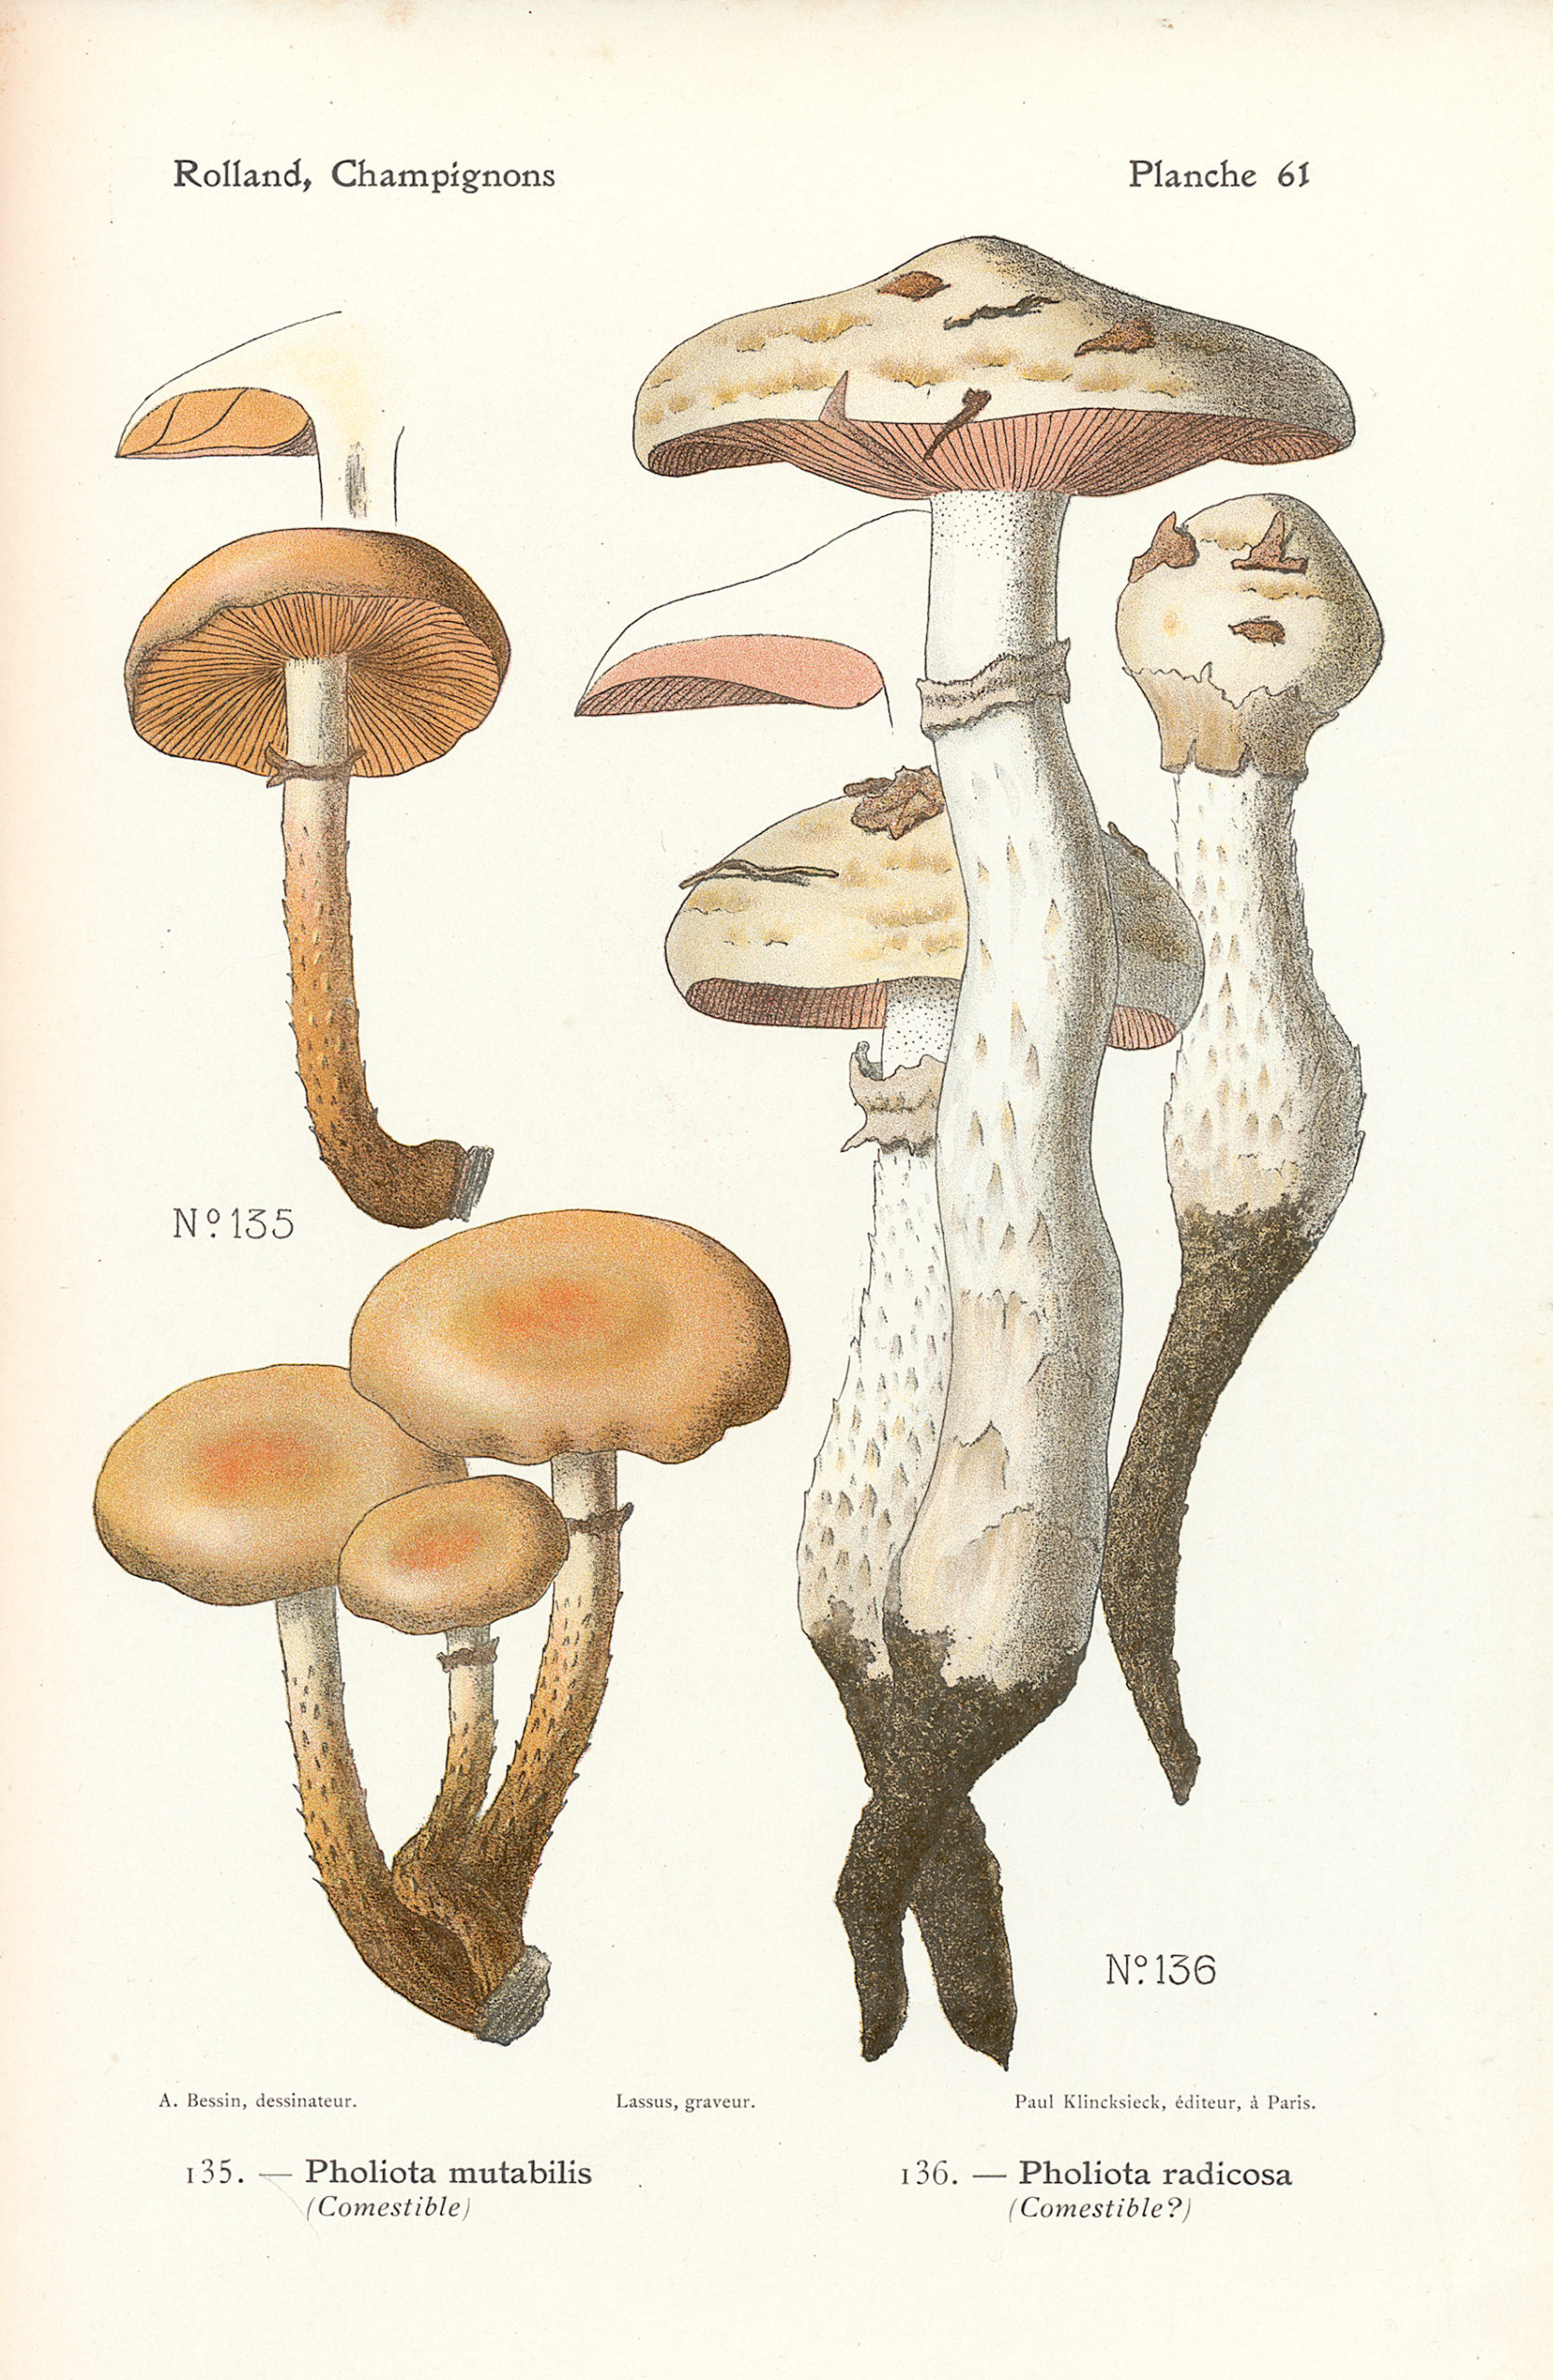 Pholiota mutabilis. Léo Rolland, Atlas de Champignons, Librairie des sciences naturelles, Paris, 1910.